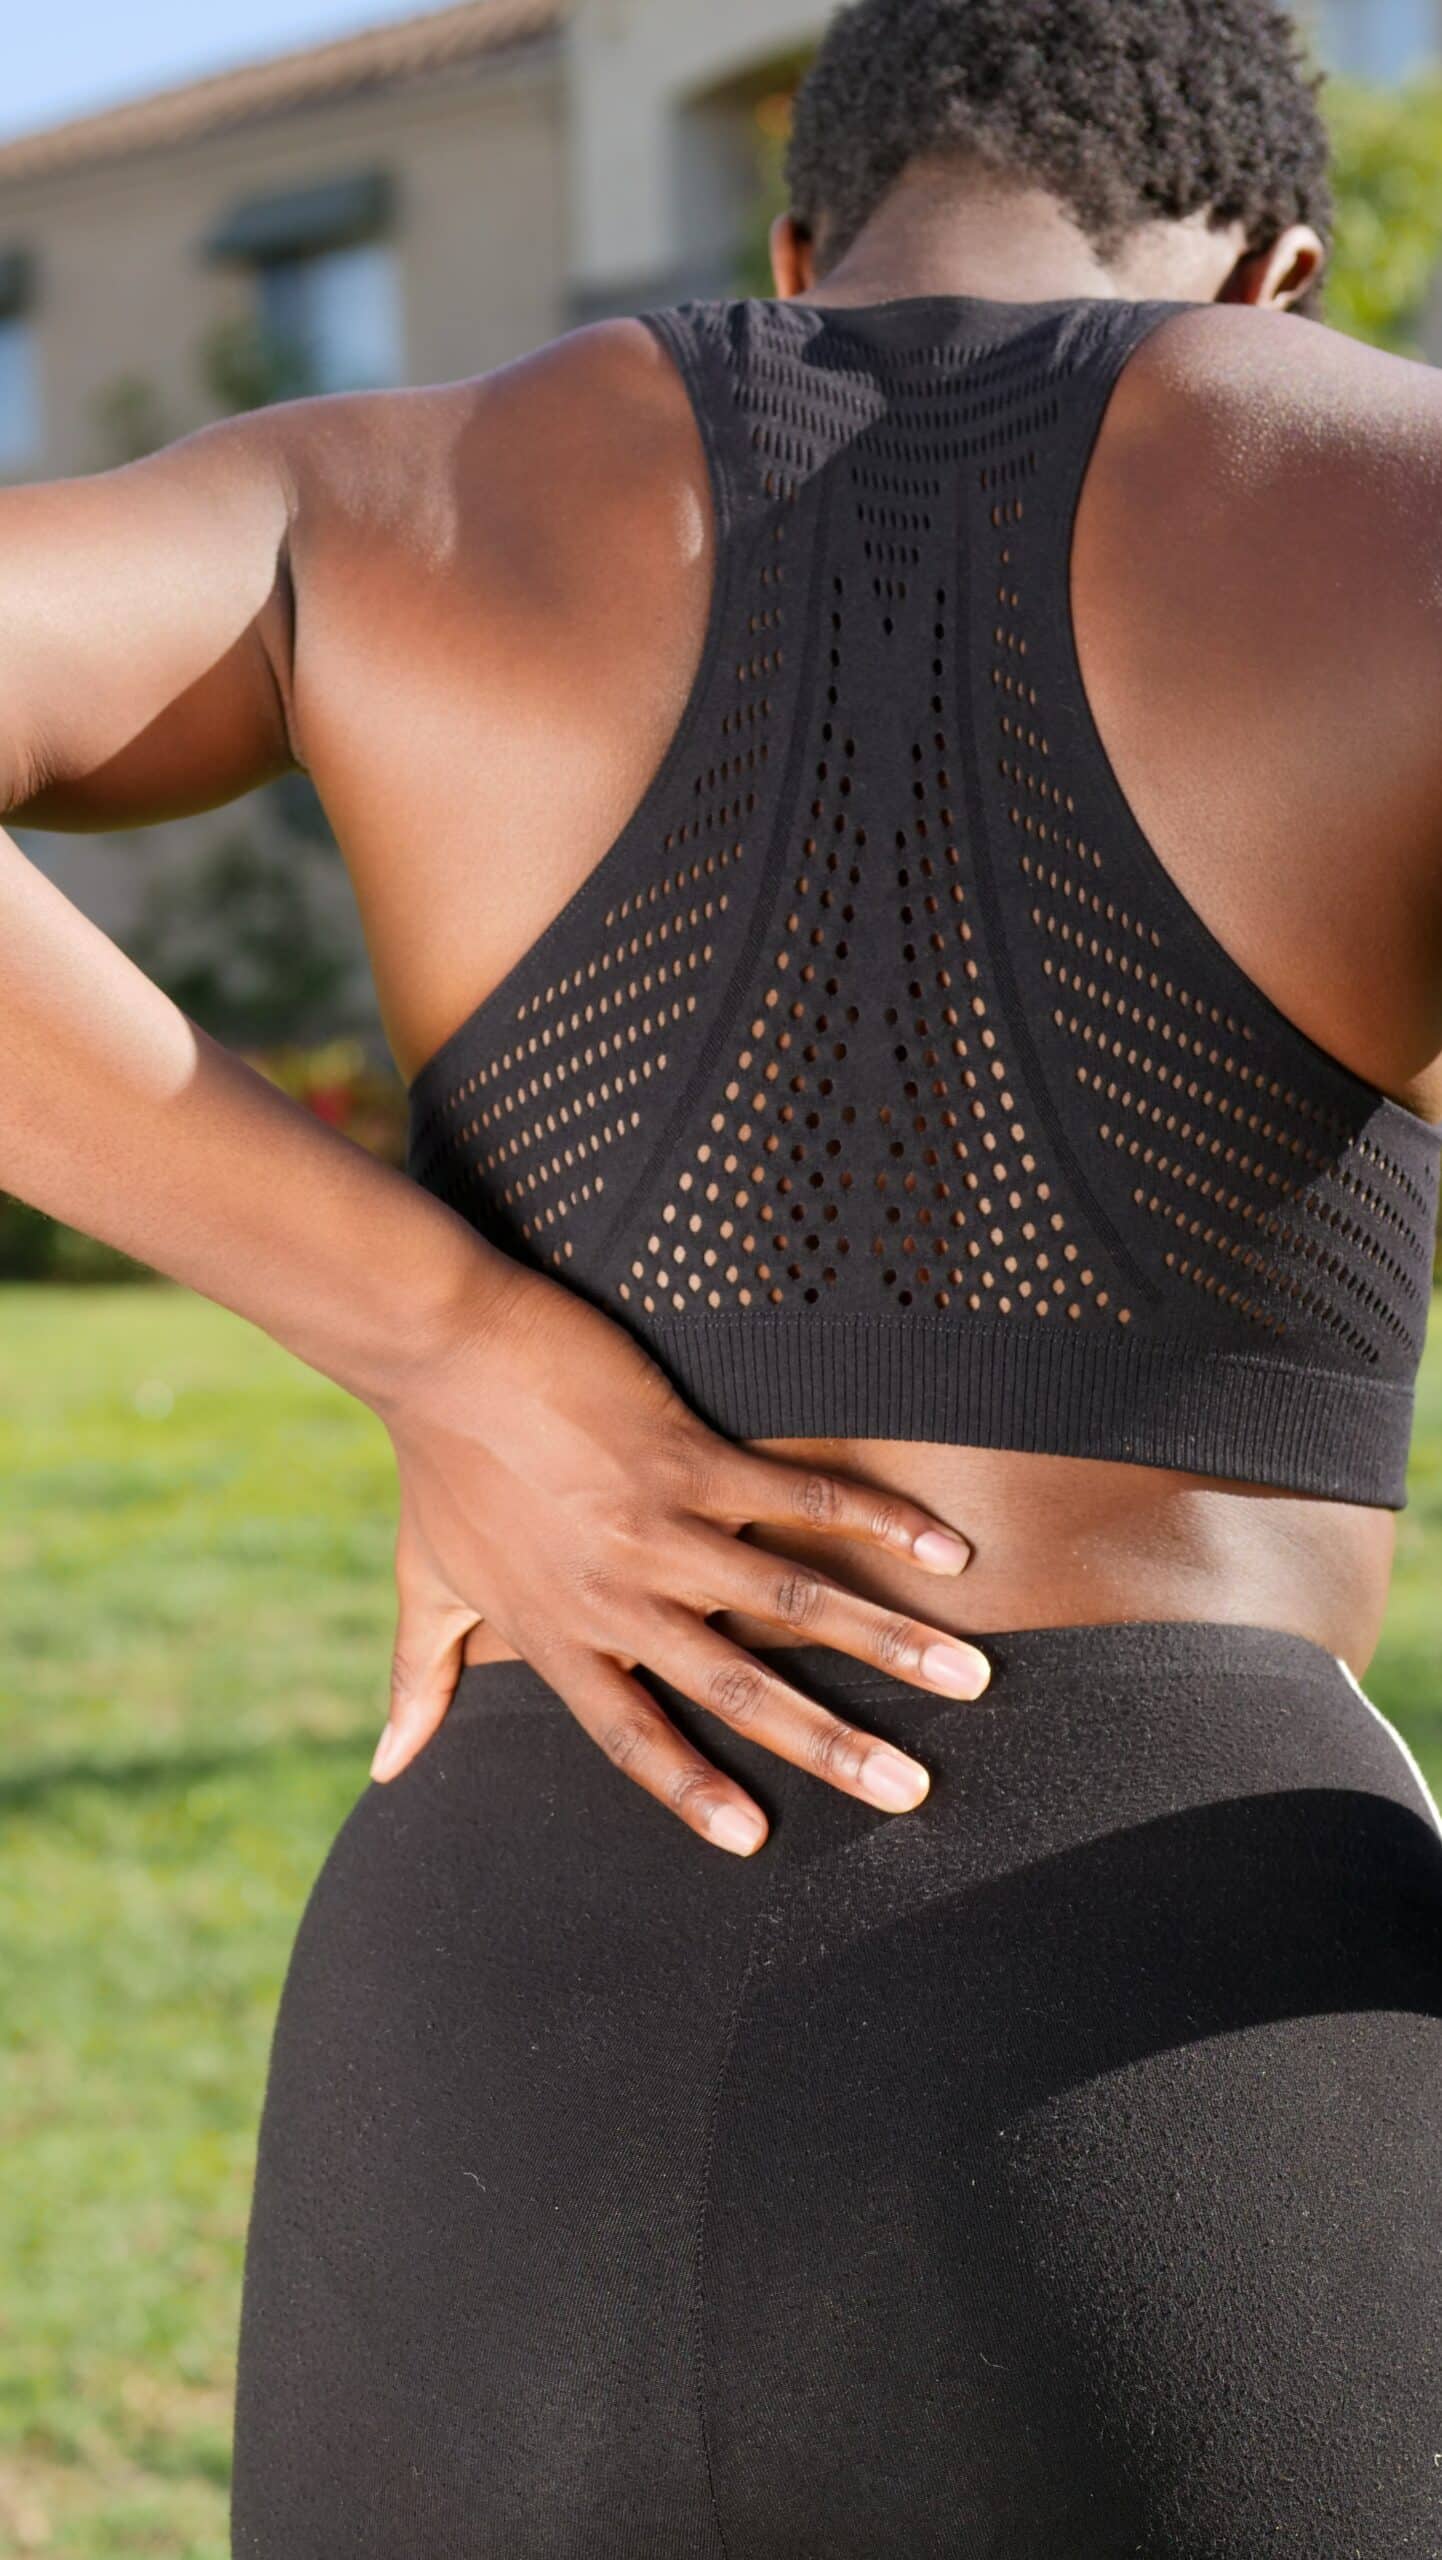 back pain of female athlete